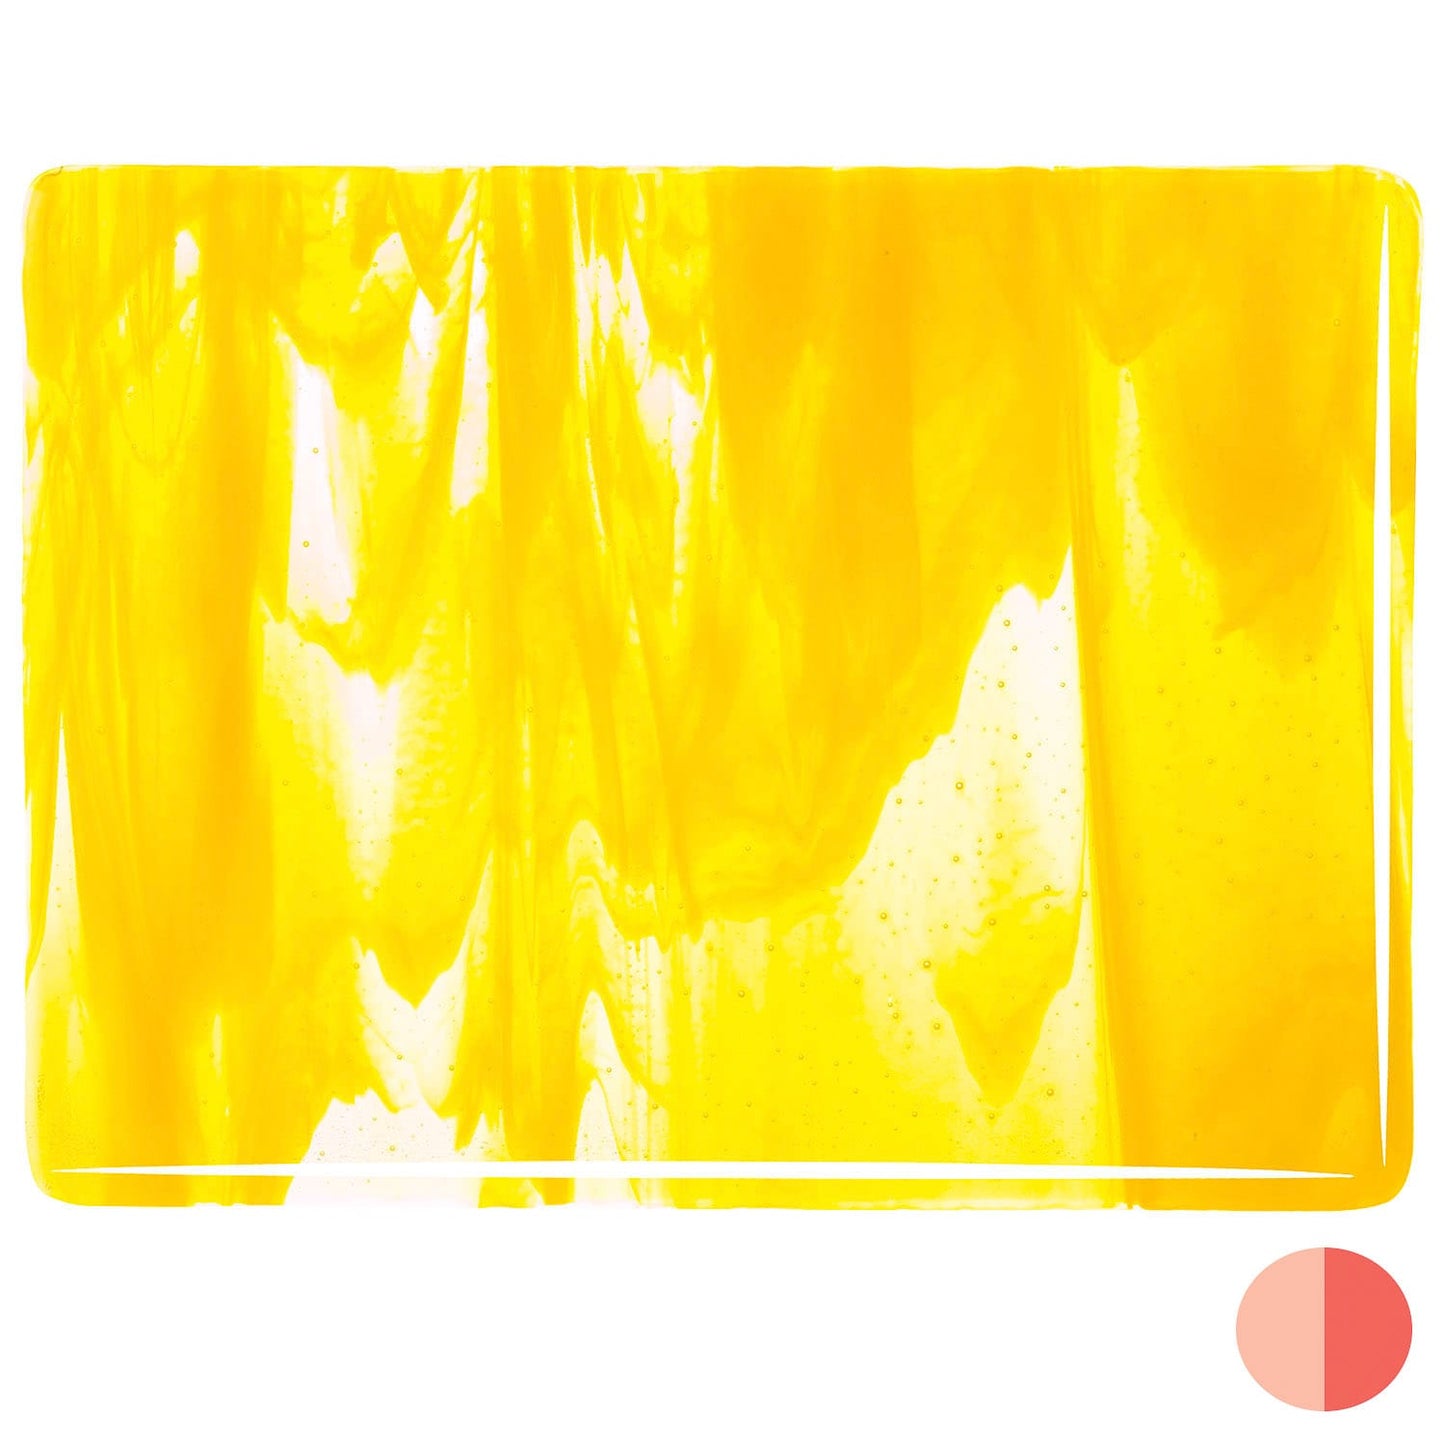 Bullseye COE90 Fusing Glass 002020 Clear, Sunflower Yellow Opalescent Full Sheet